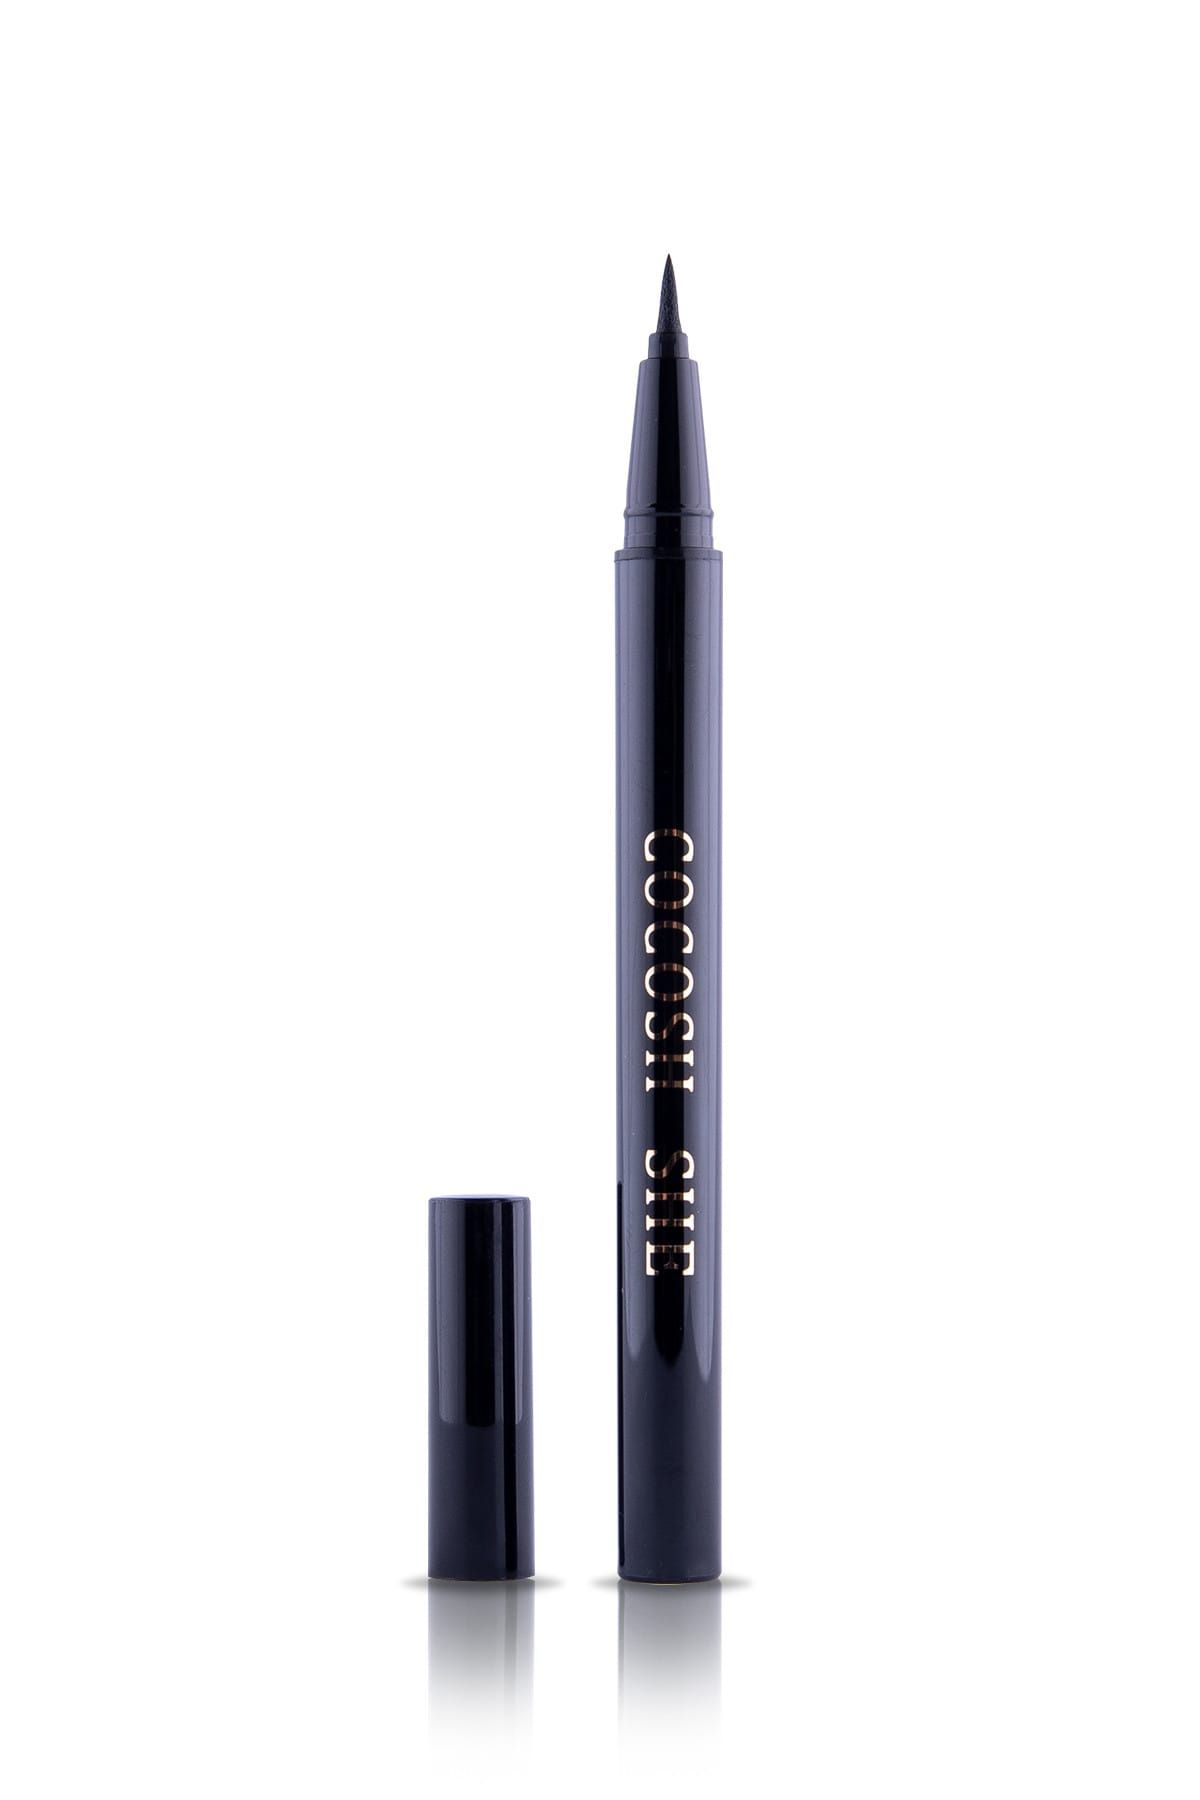 Cocosh She Suya Dayanıklı Siyah Eyeliner - Super Slim Waterproof Eyeliner Pen 8681569722330